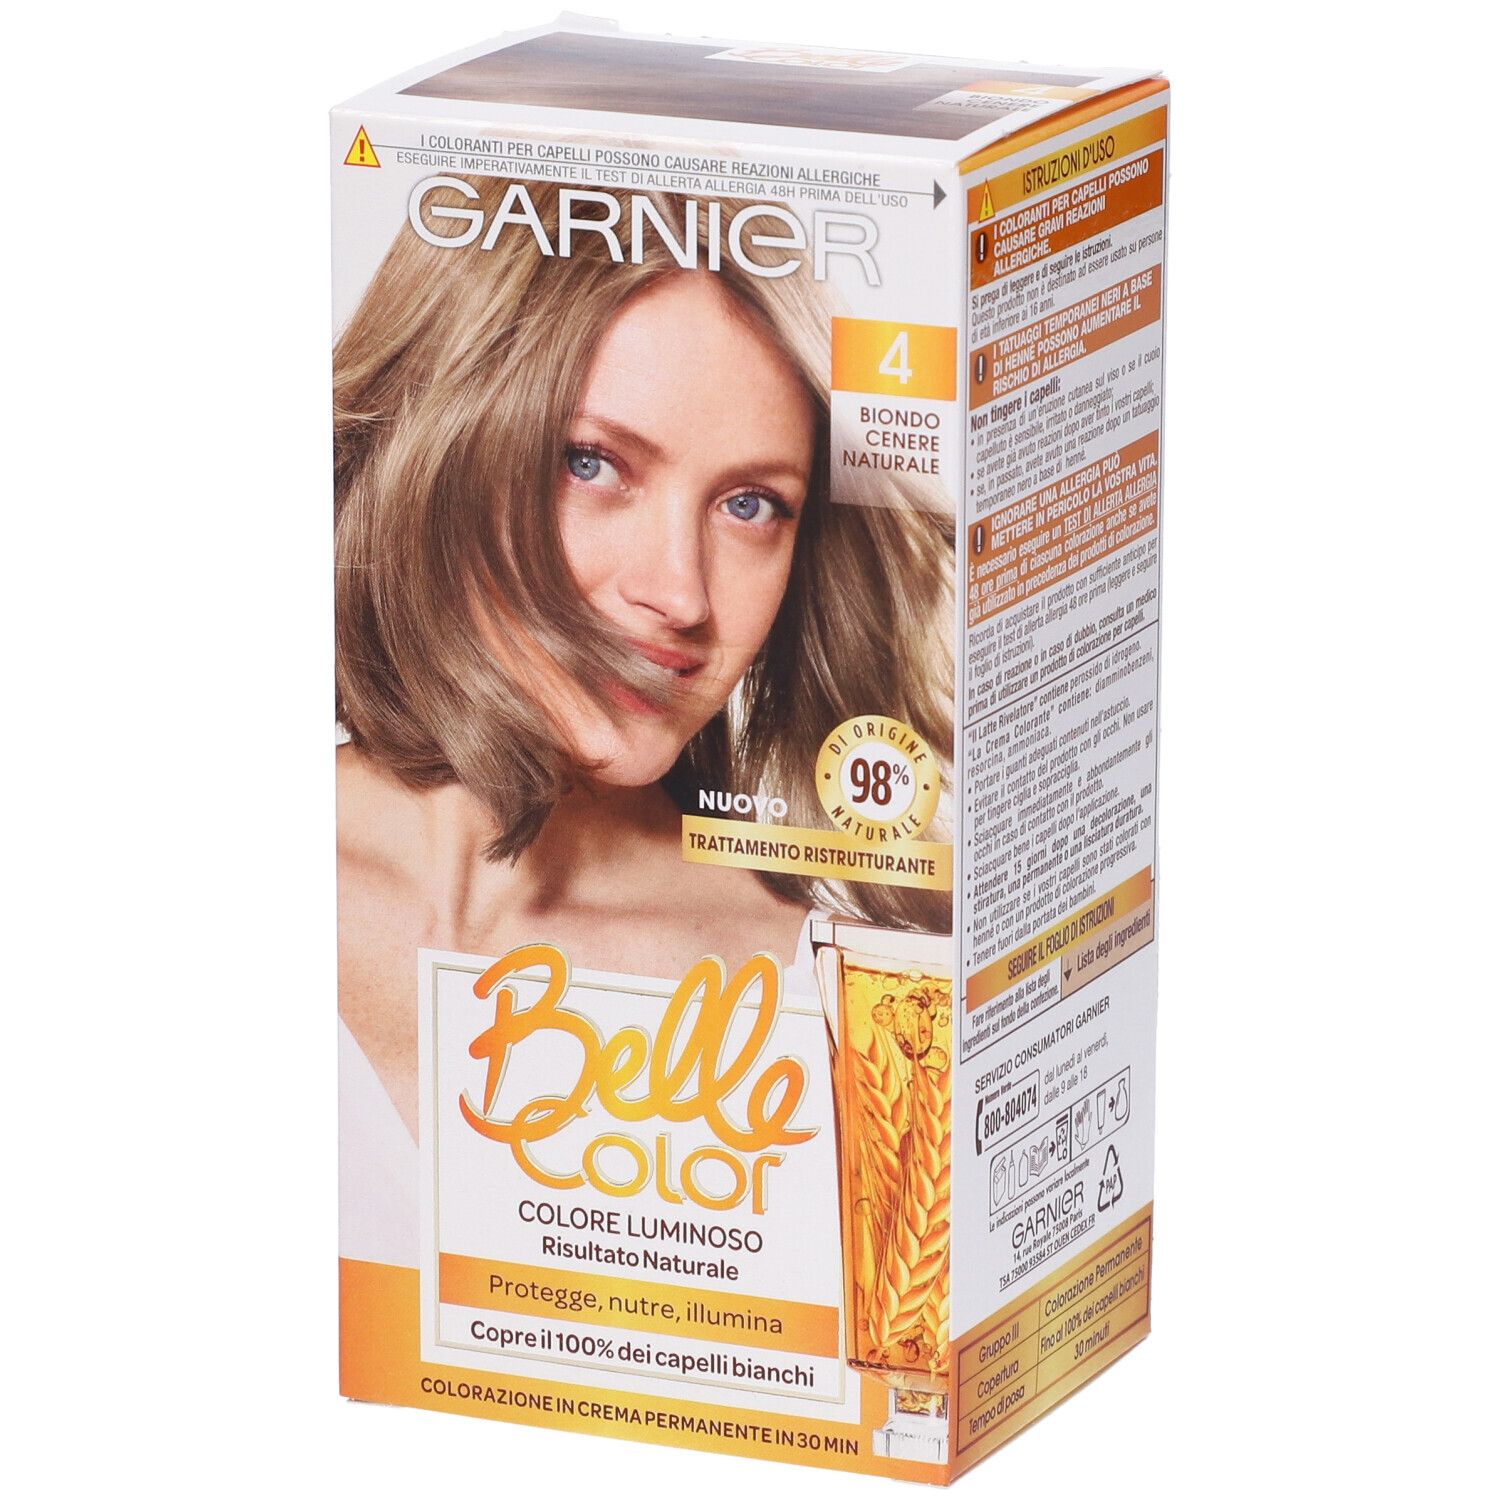 Image of Garnier Tinta Capelli Belle Color, Colore Luminoso e Riflessi Naturali, Copre il 100% dei capelli bianchi, Biondo Cenere Naturale